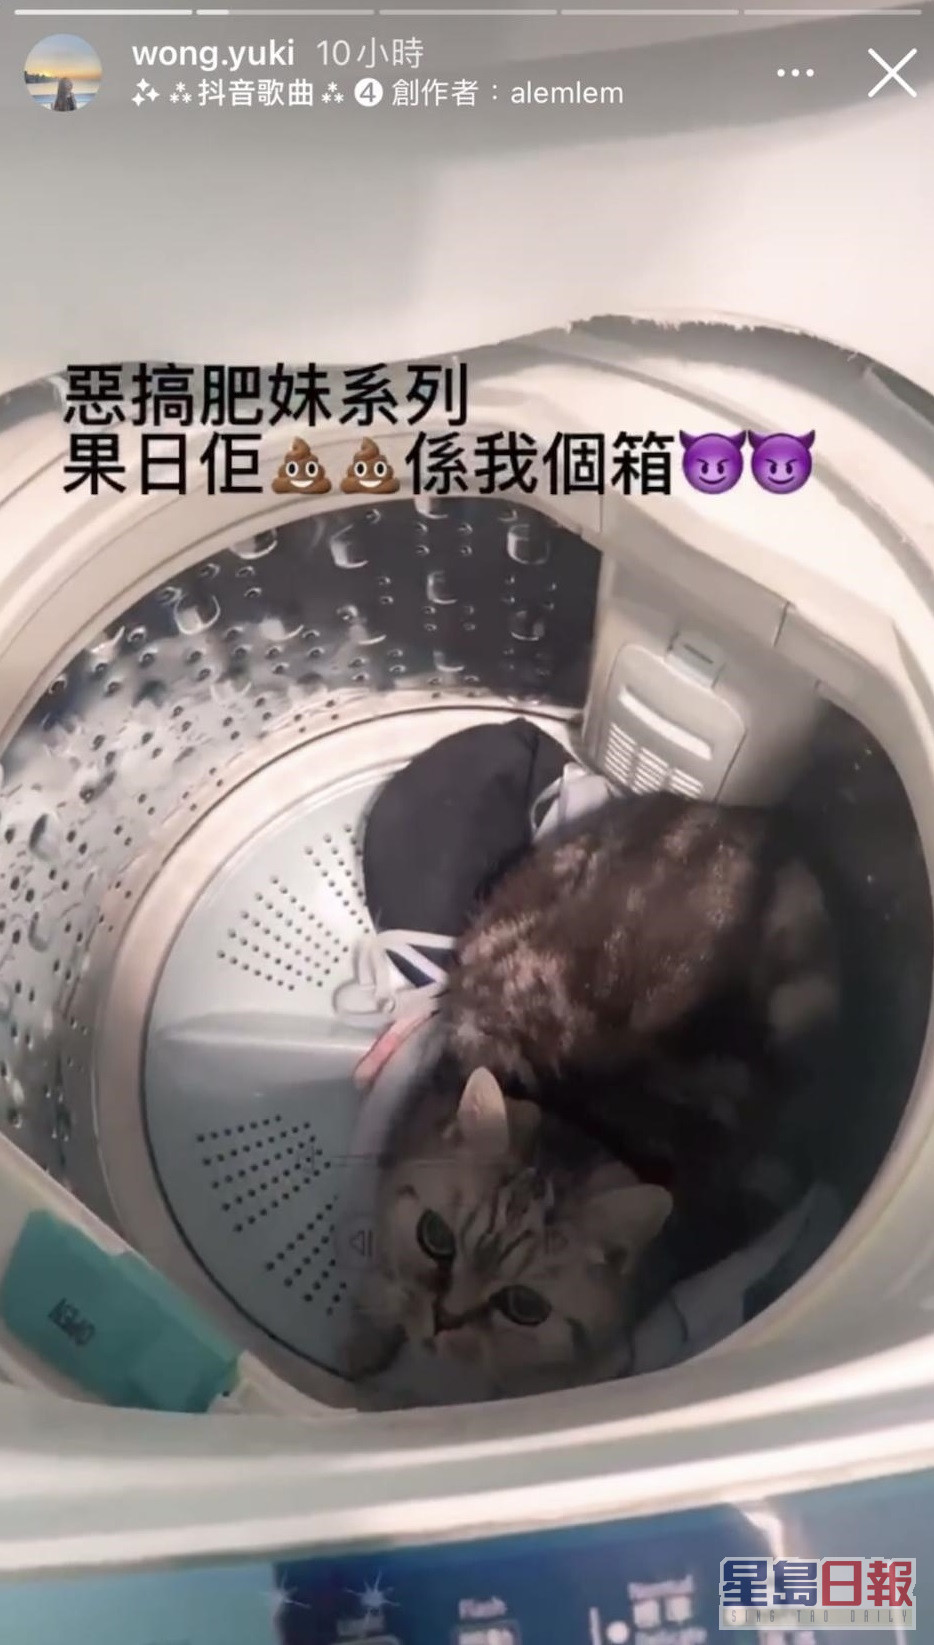 因家貓在內衣箱內便溺，黃綺婷將其放入洗衣機。